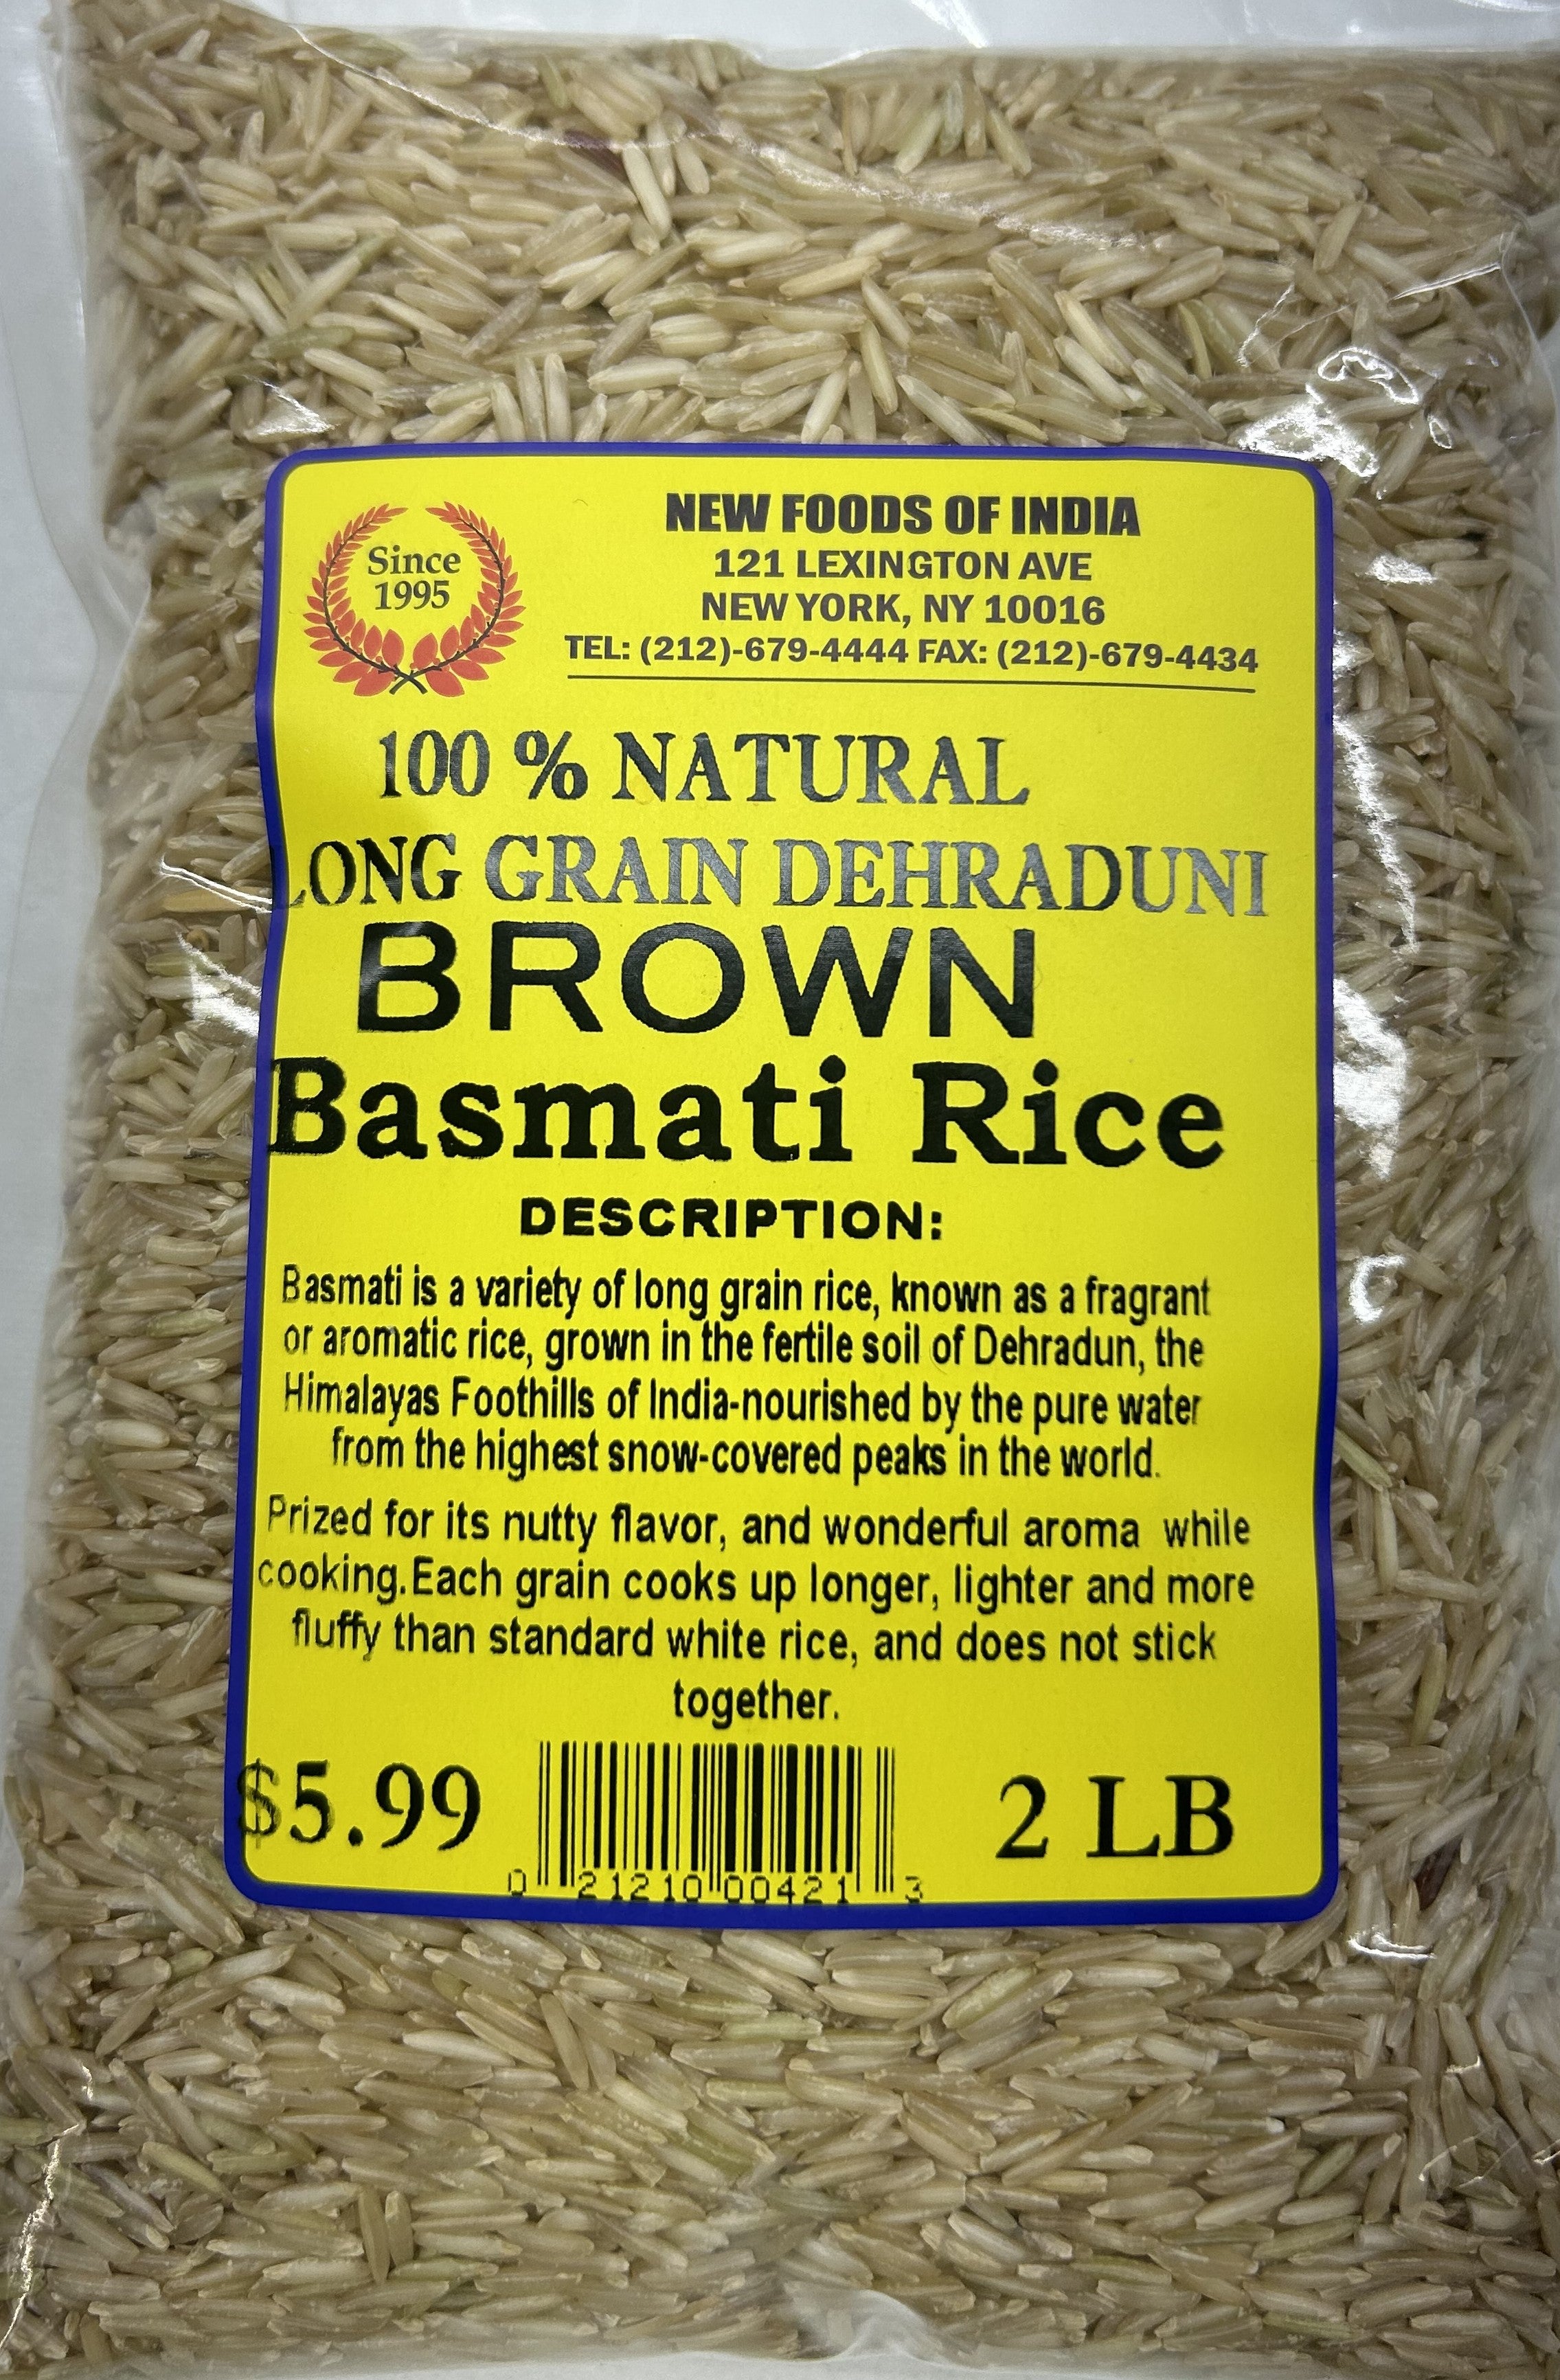 LONG Grain Dehradun Brown Basmati Rice